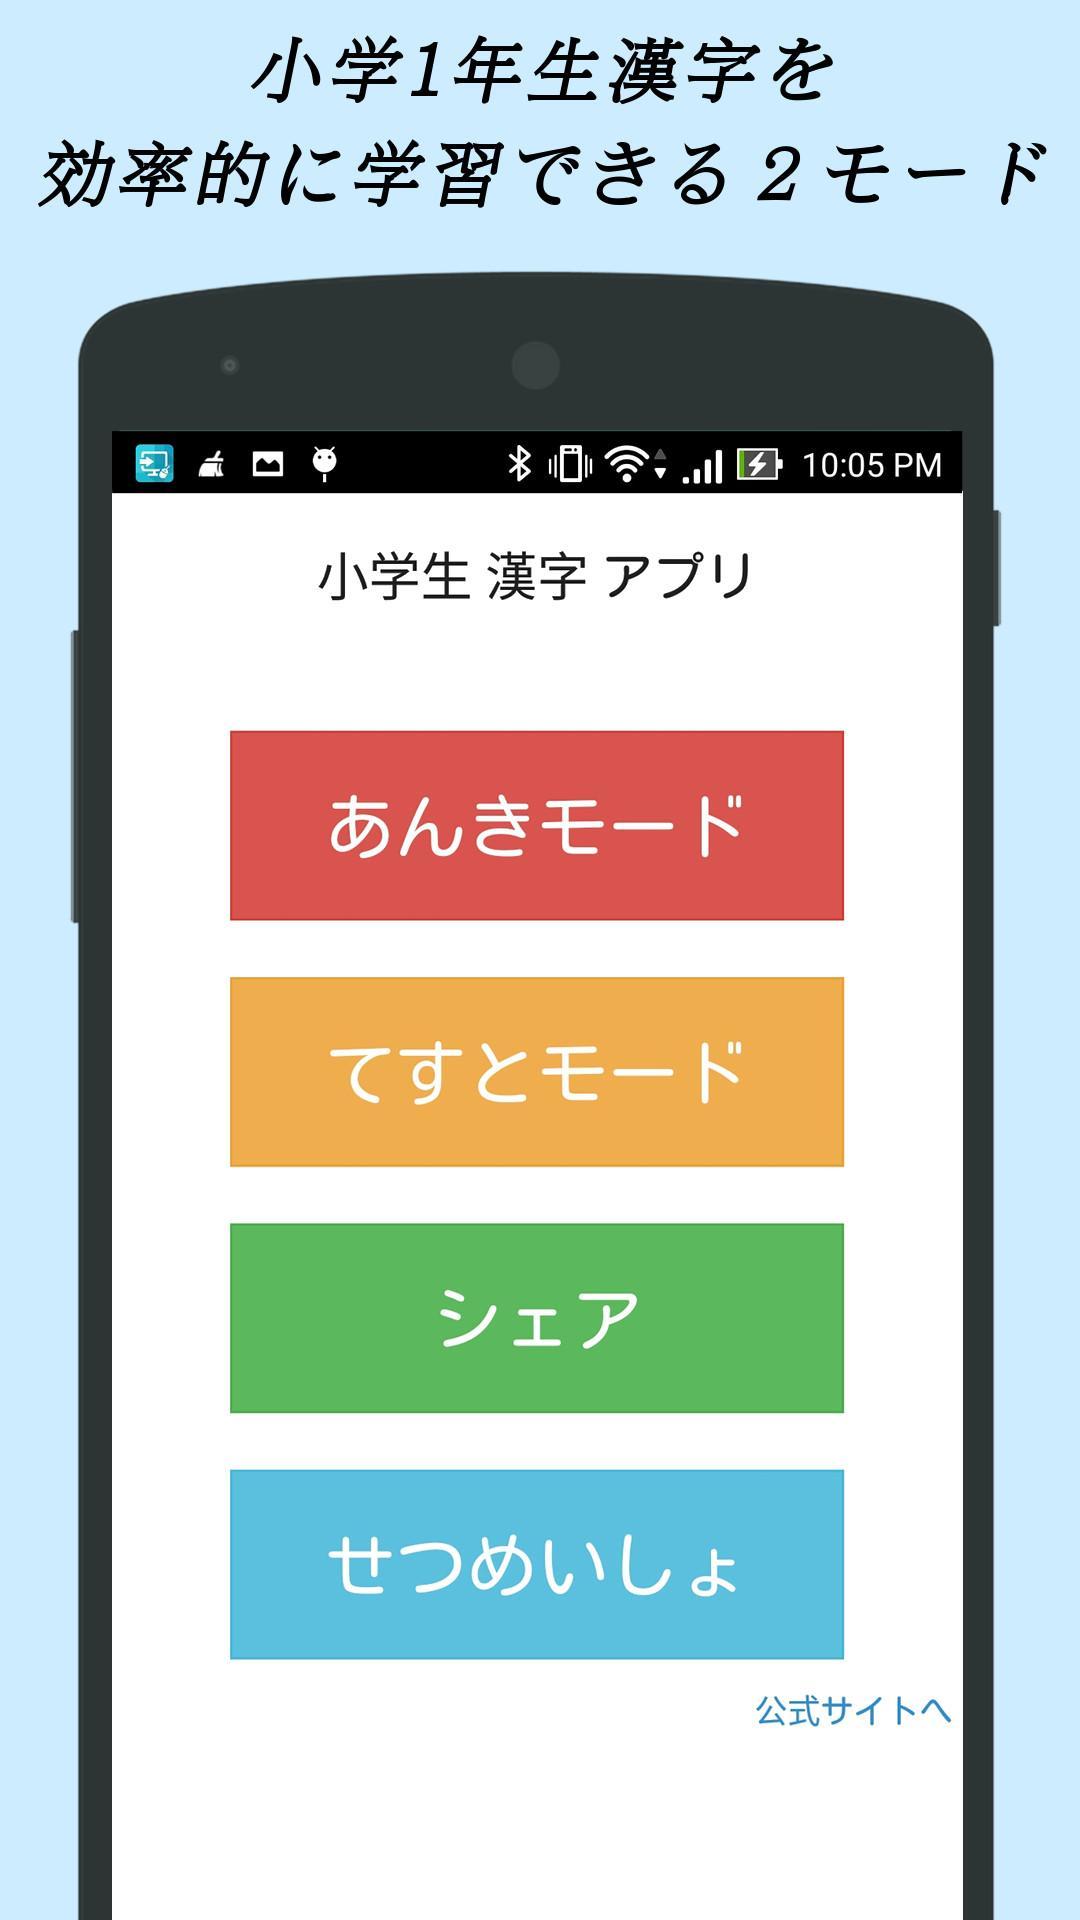 Android Icin 小学生漢字 1年生編 無料で小学校の漢字を勉強 Apk